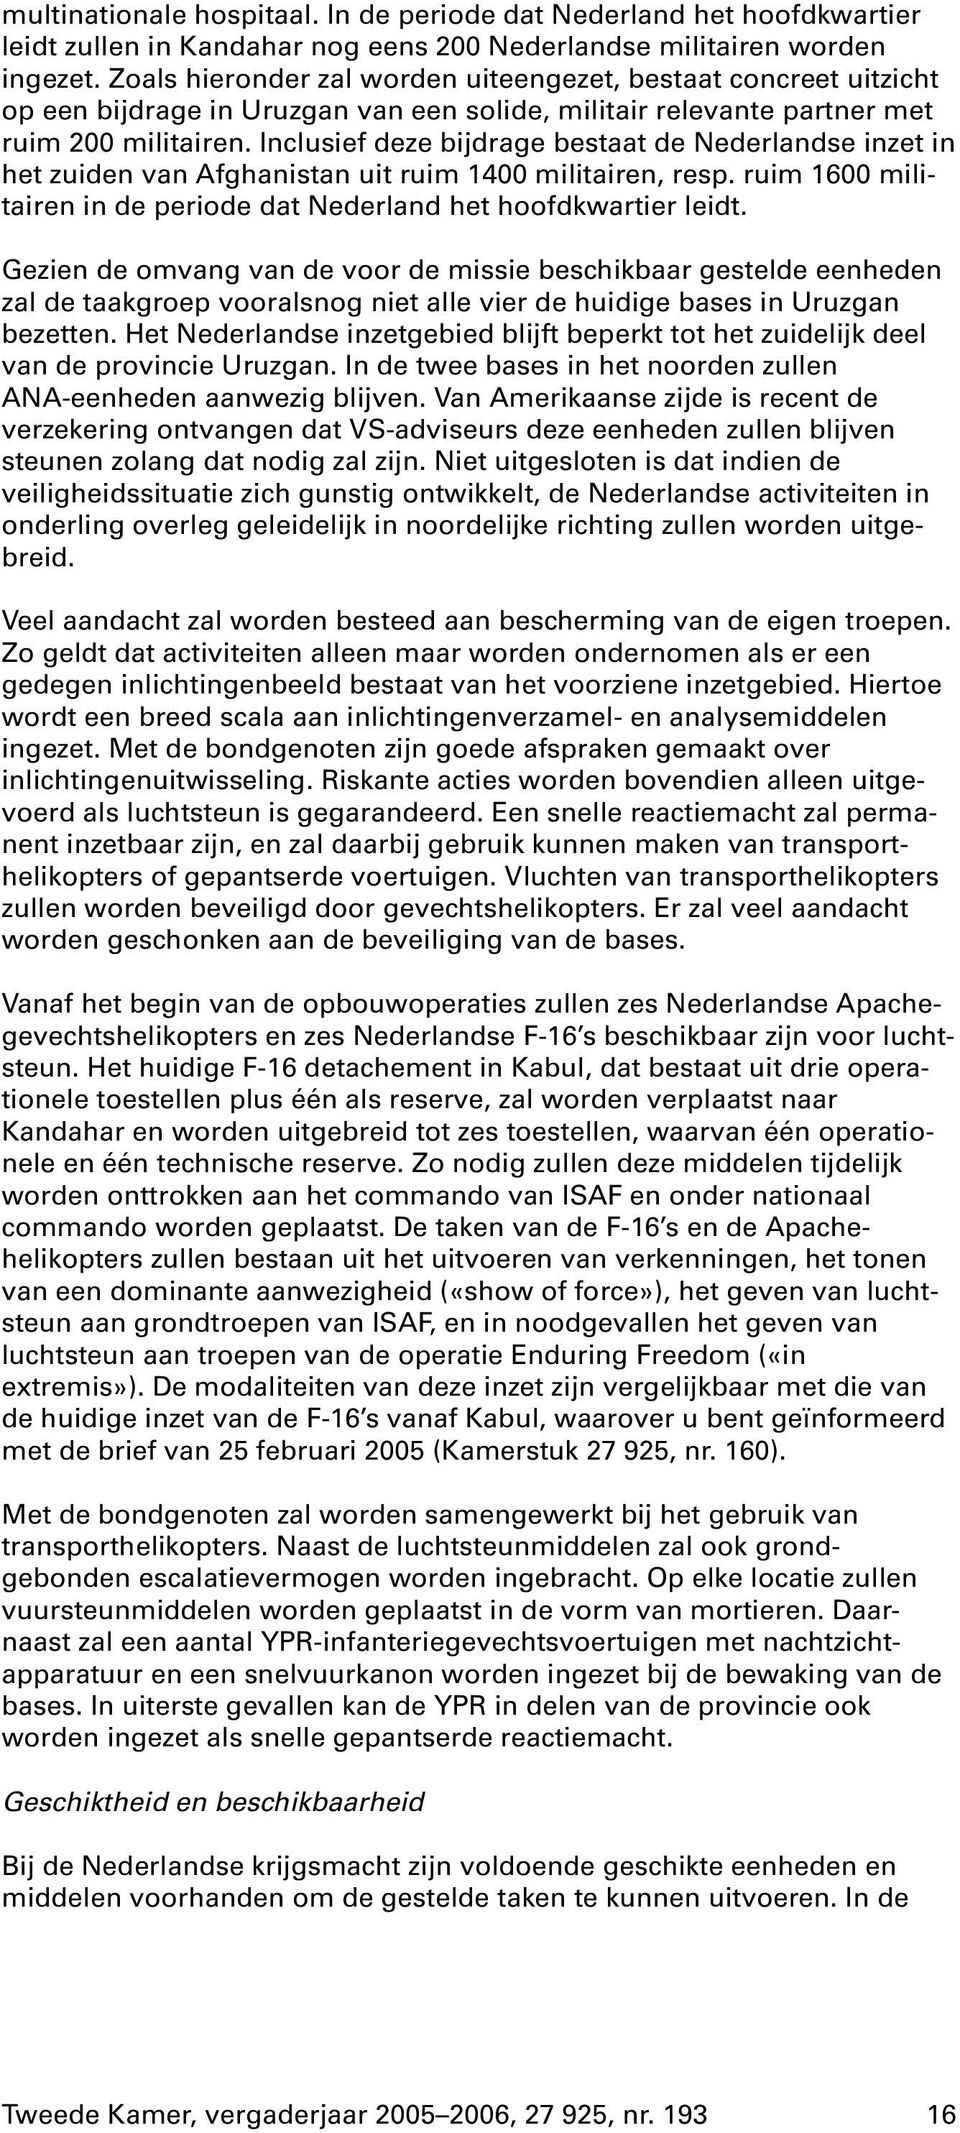 Inclusiefdeze bijdrage bestaat de Nederlandse inzet in het zuiden van Afghanistan uit ruim 1400 militairen, resp. ruim 1600 militairen in de periode dat Nederland het hoofdkwartier leidt.